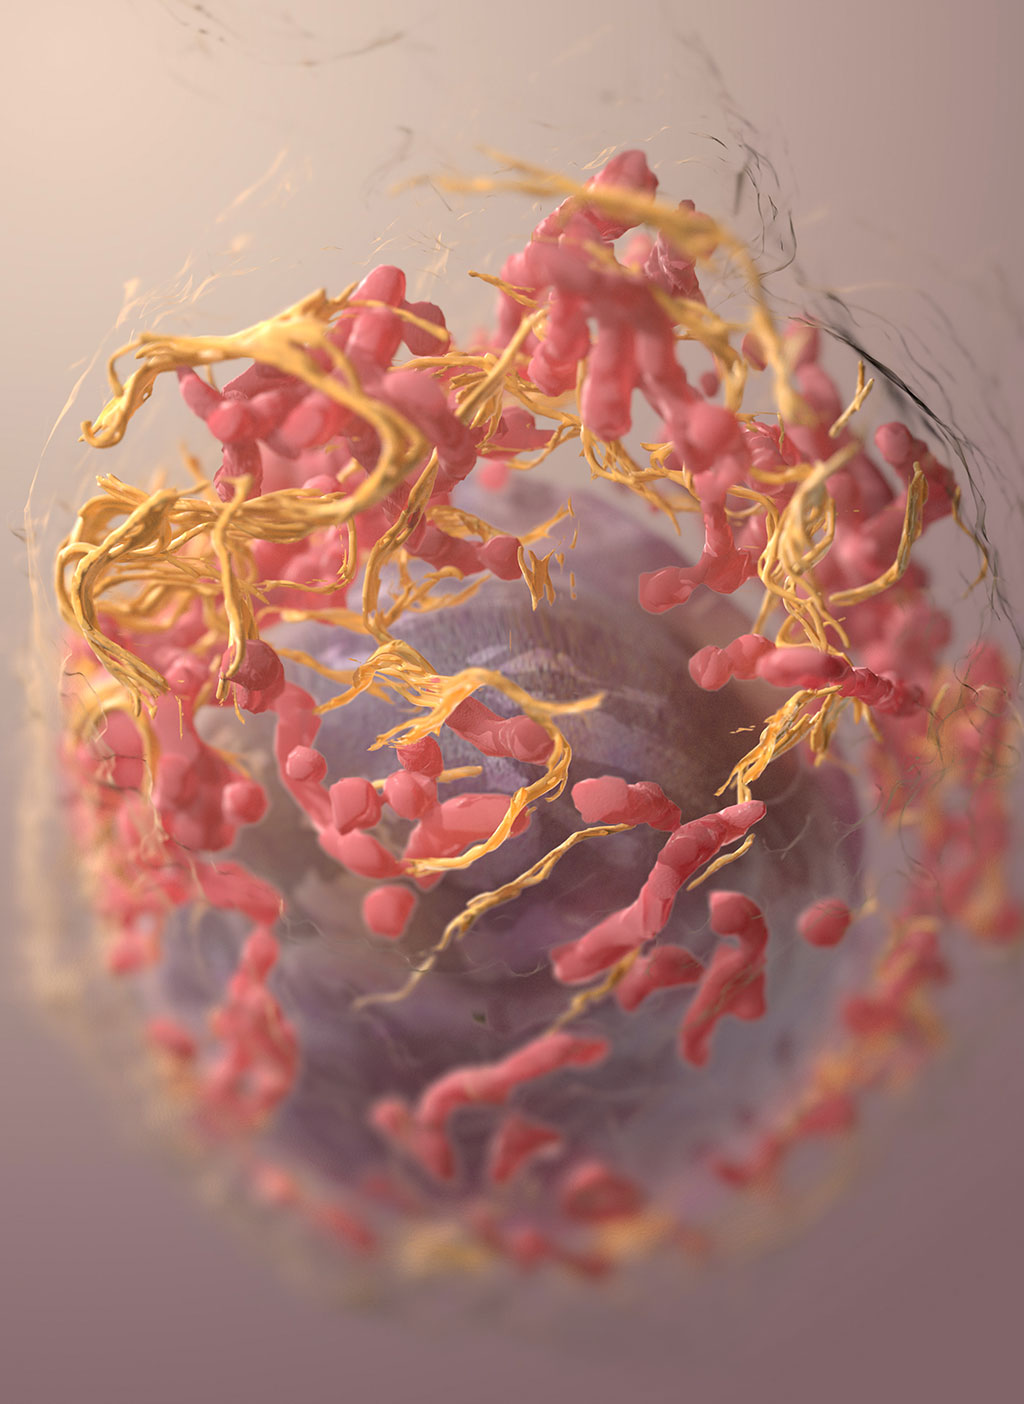 Imagen: Las proteínas podrían algún día permitir que se realice un examen de detección de cáncer de mama con un análisis de sangre (Fotografía cortesía de Unsplash)